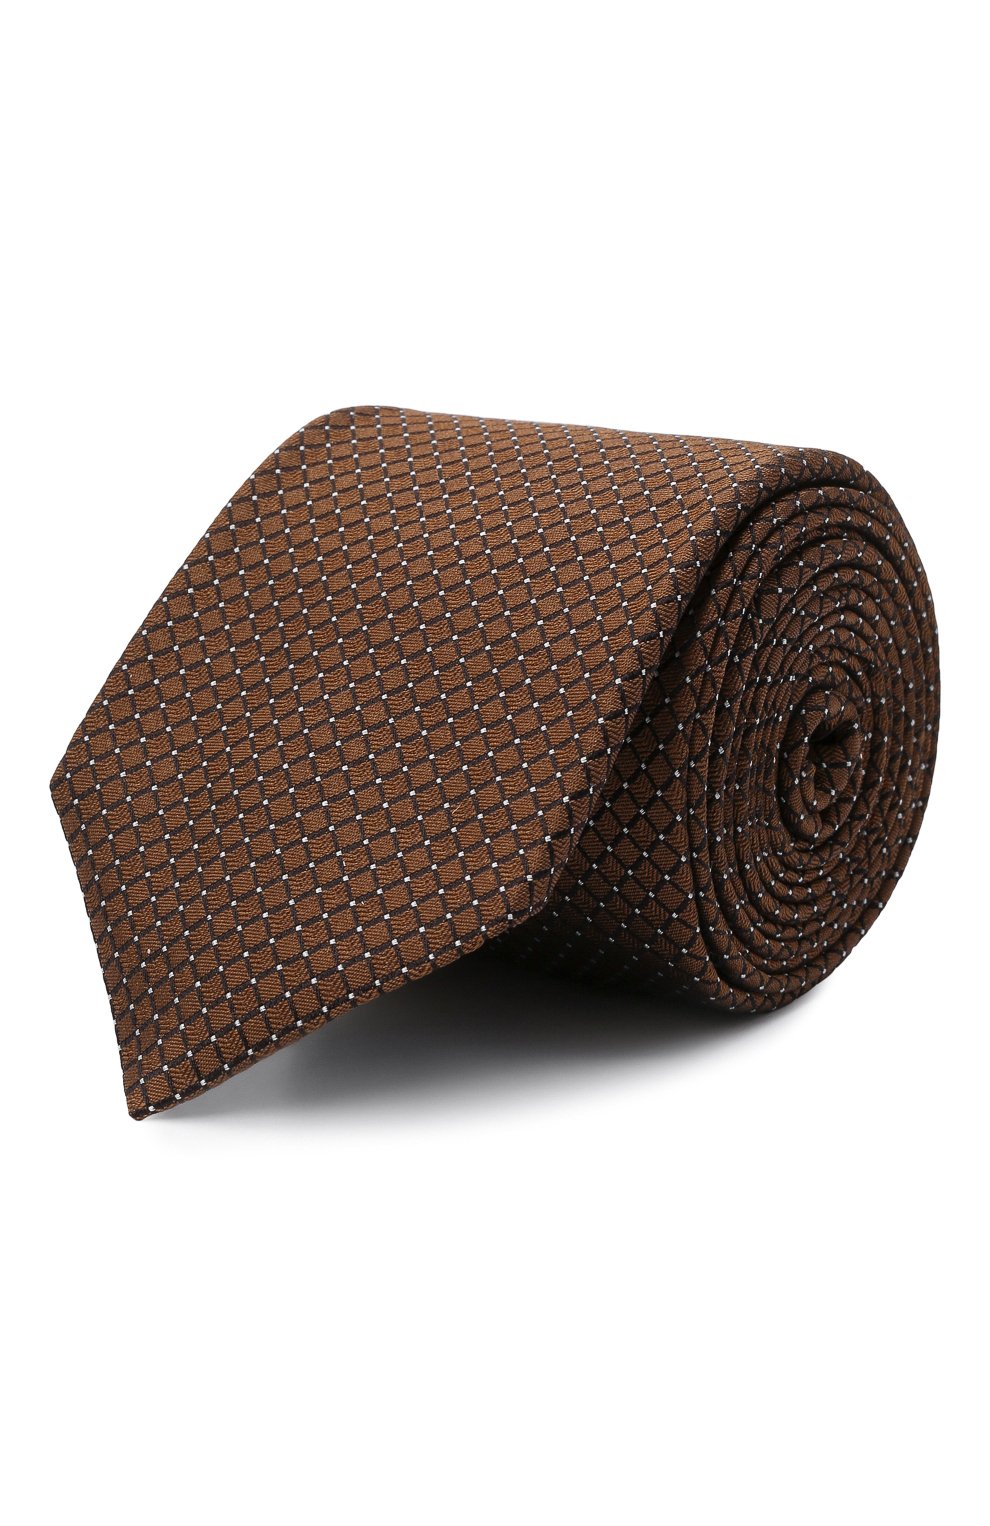 С принтом BOSS, Шелковый галстук BOSS, Италия, Коричневый, Шелк: 100%;, 12392402  - купить